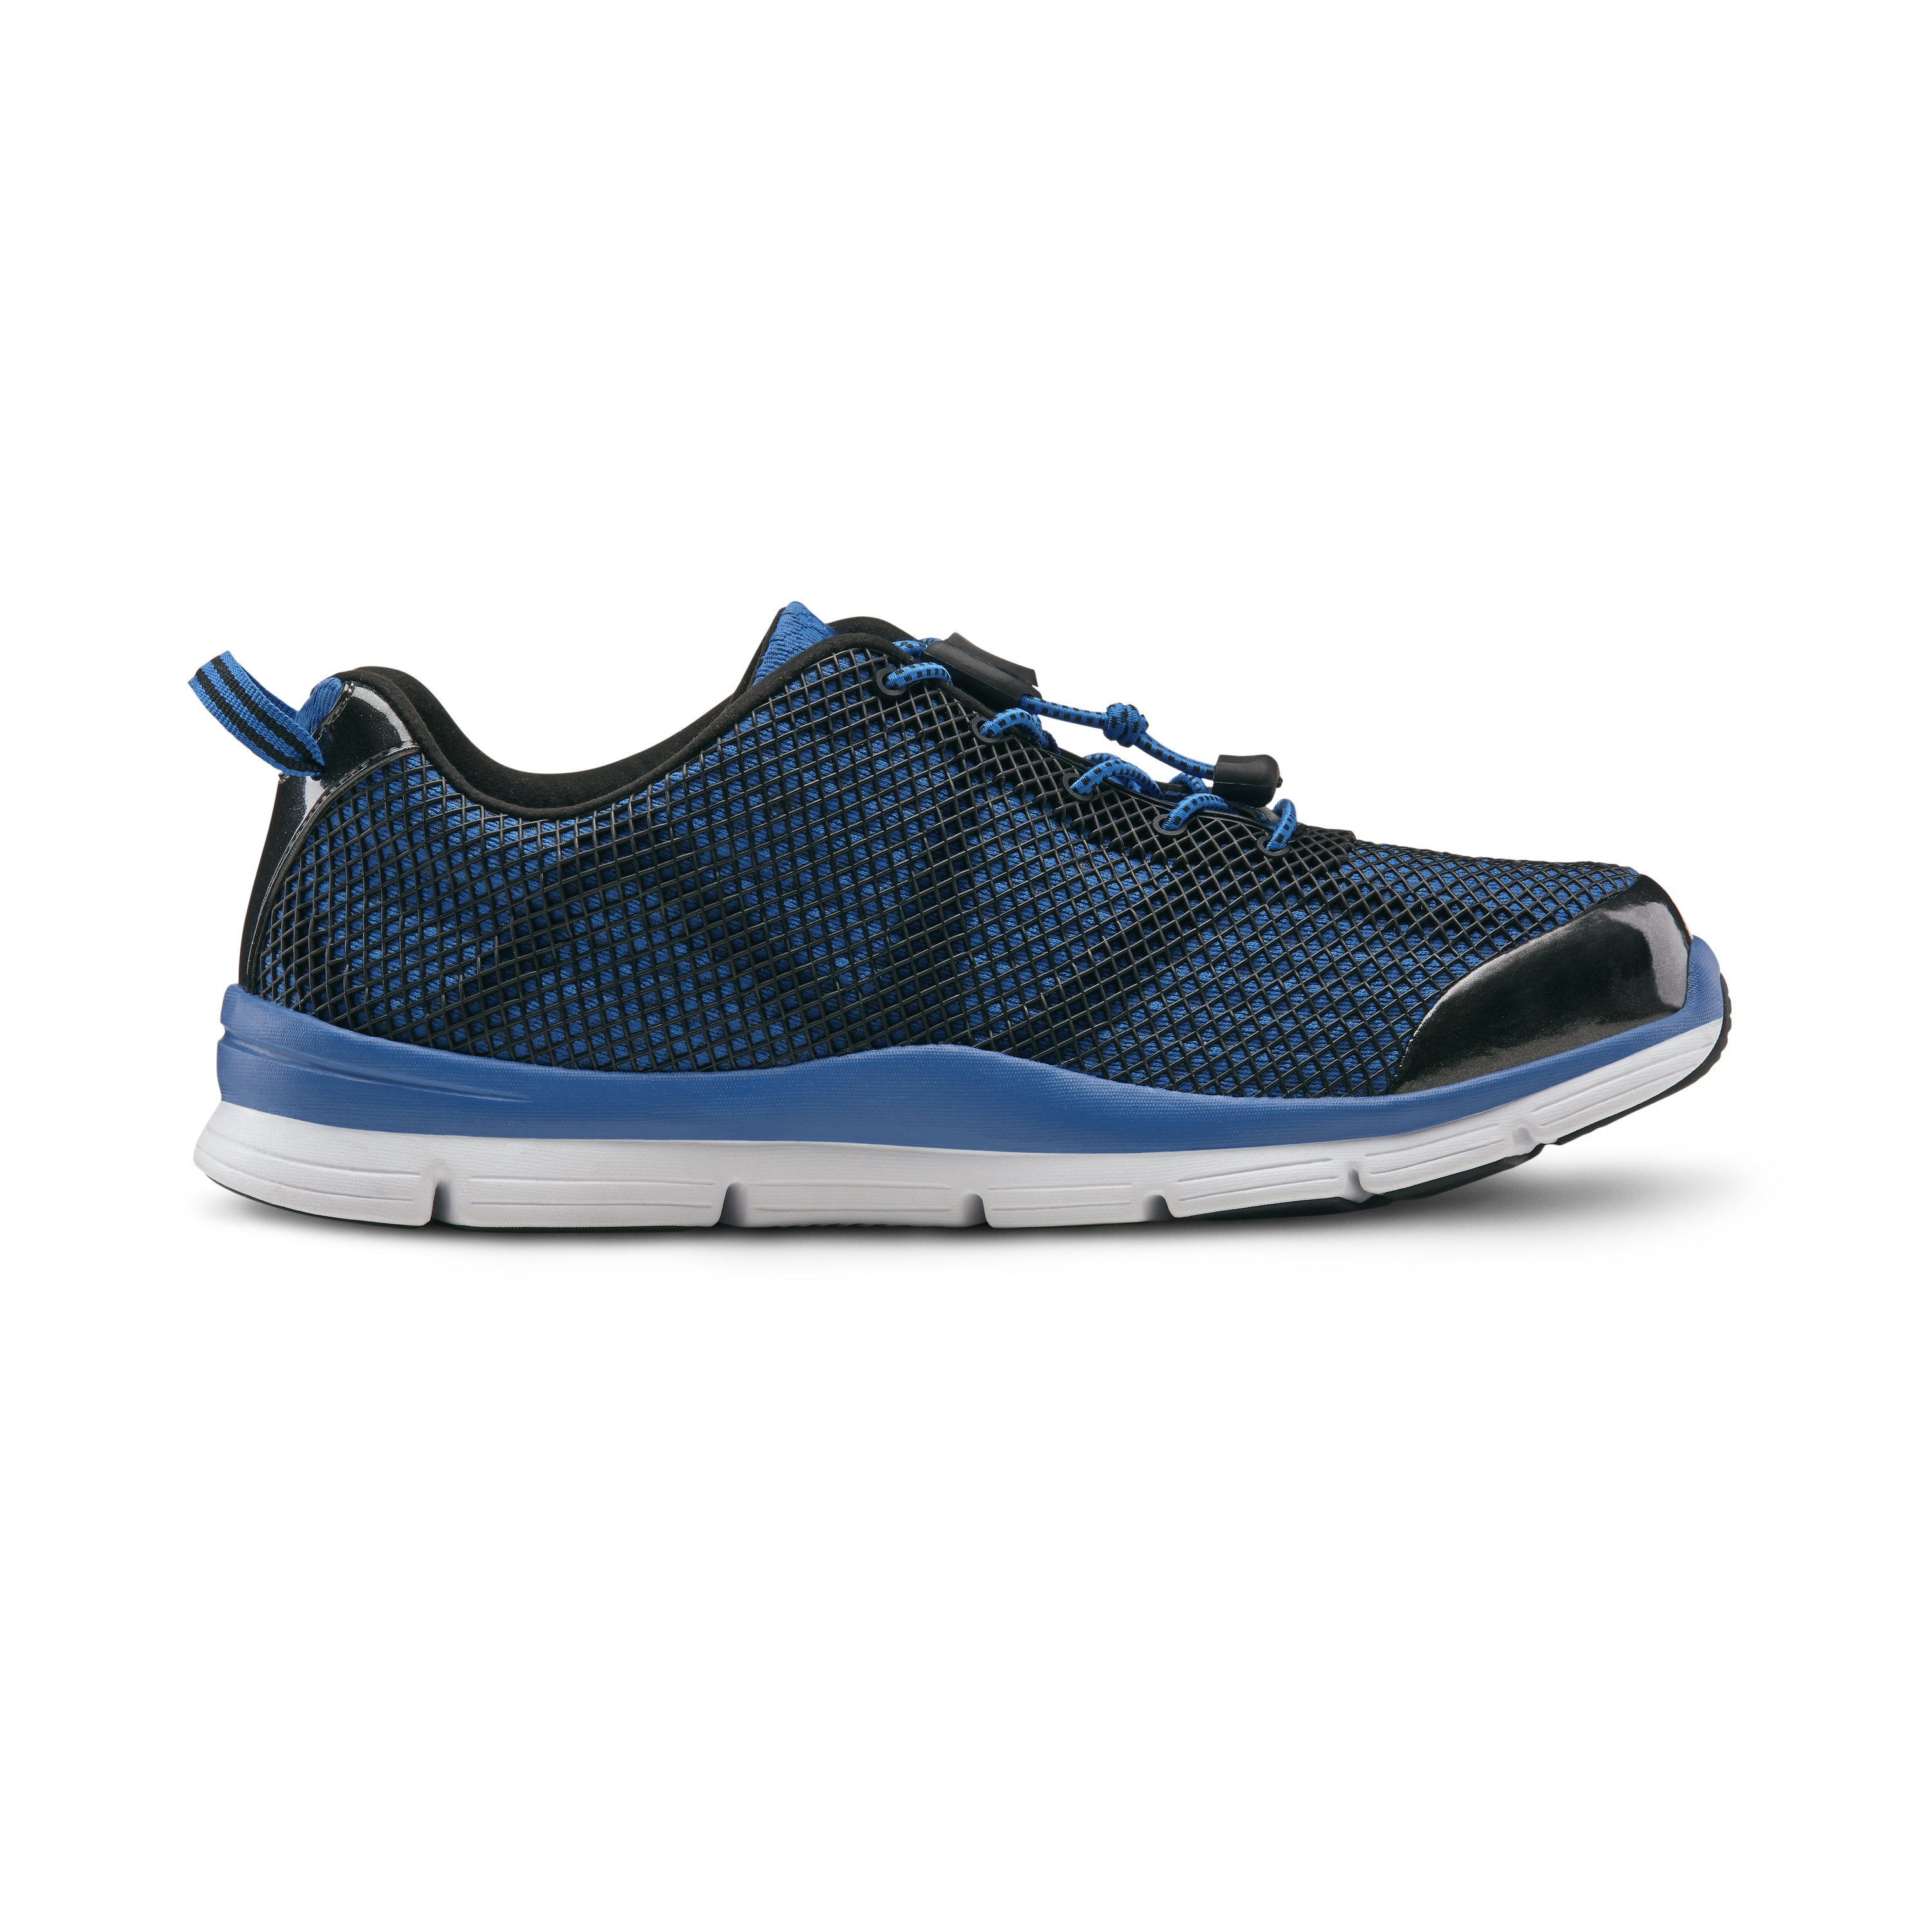 Zusatzbild DR. COMFORT® Jason blau, außen, Orthopädische Schuhe, Besonders weicher und leichter Freizeit- und Aktivschuh